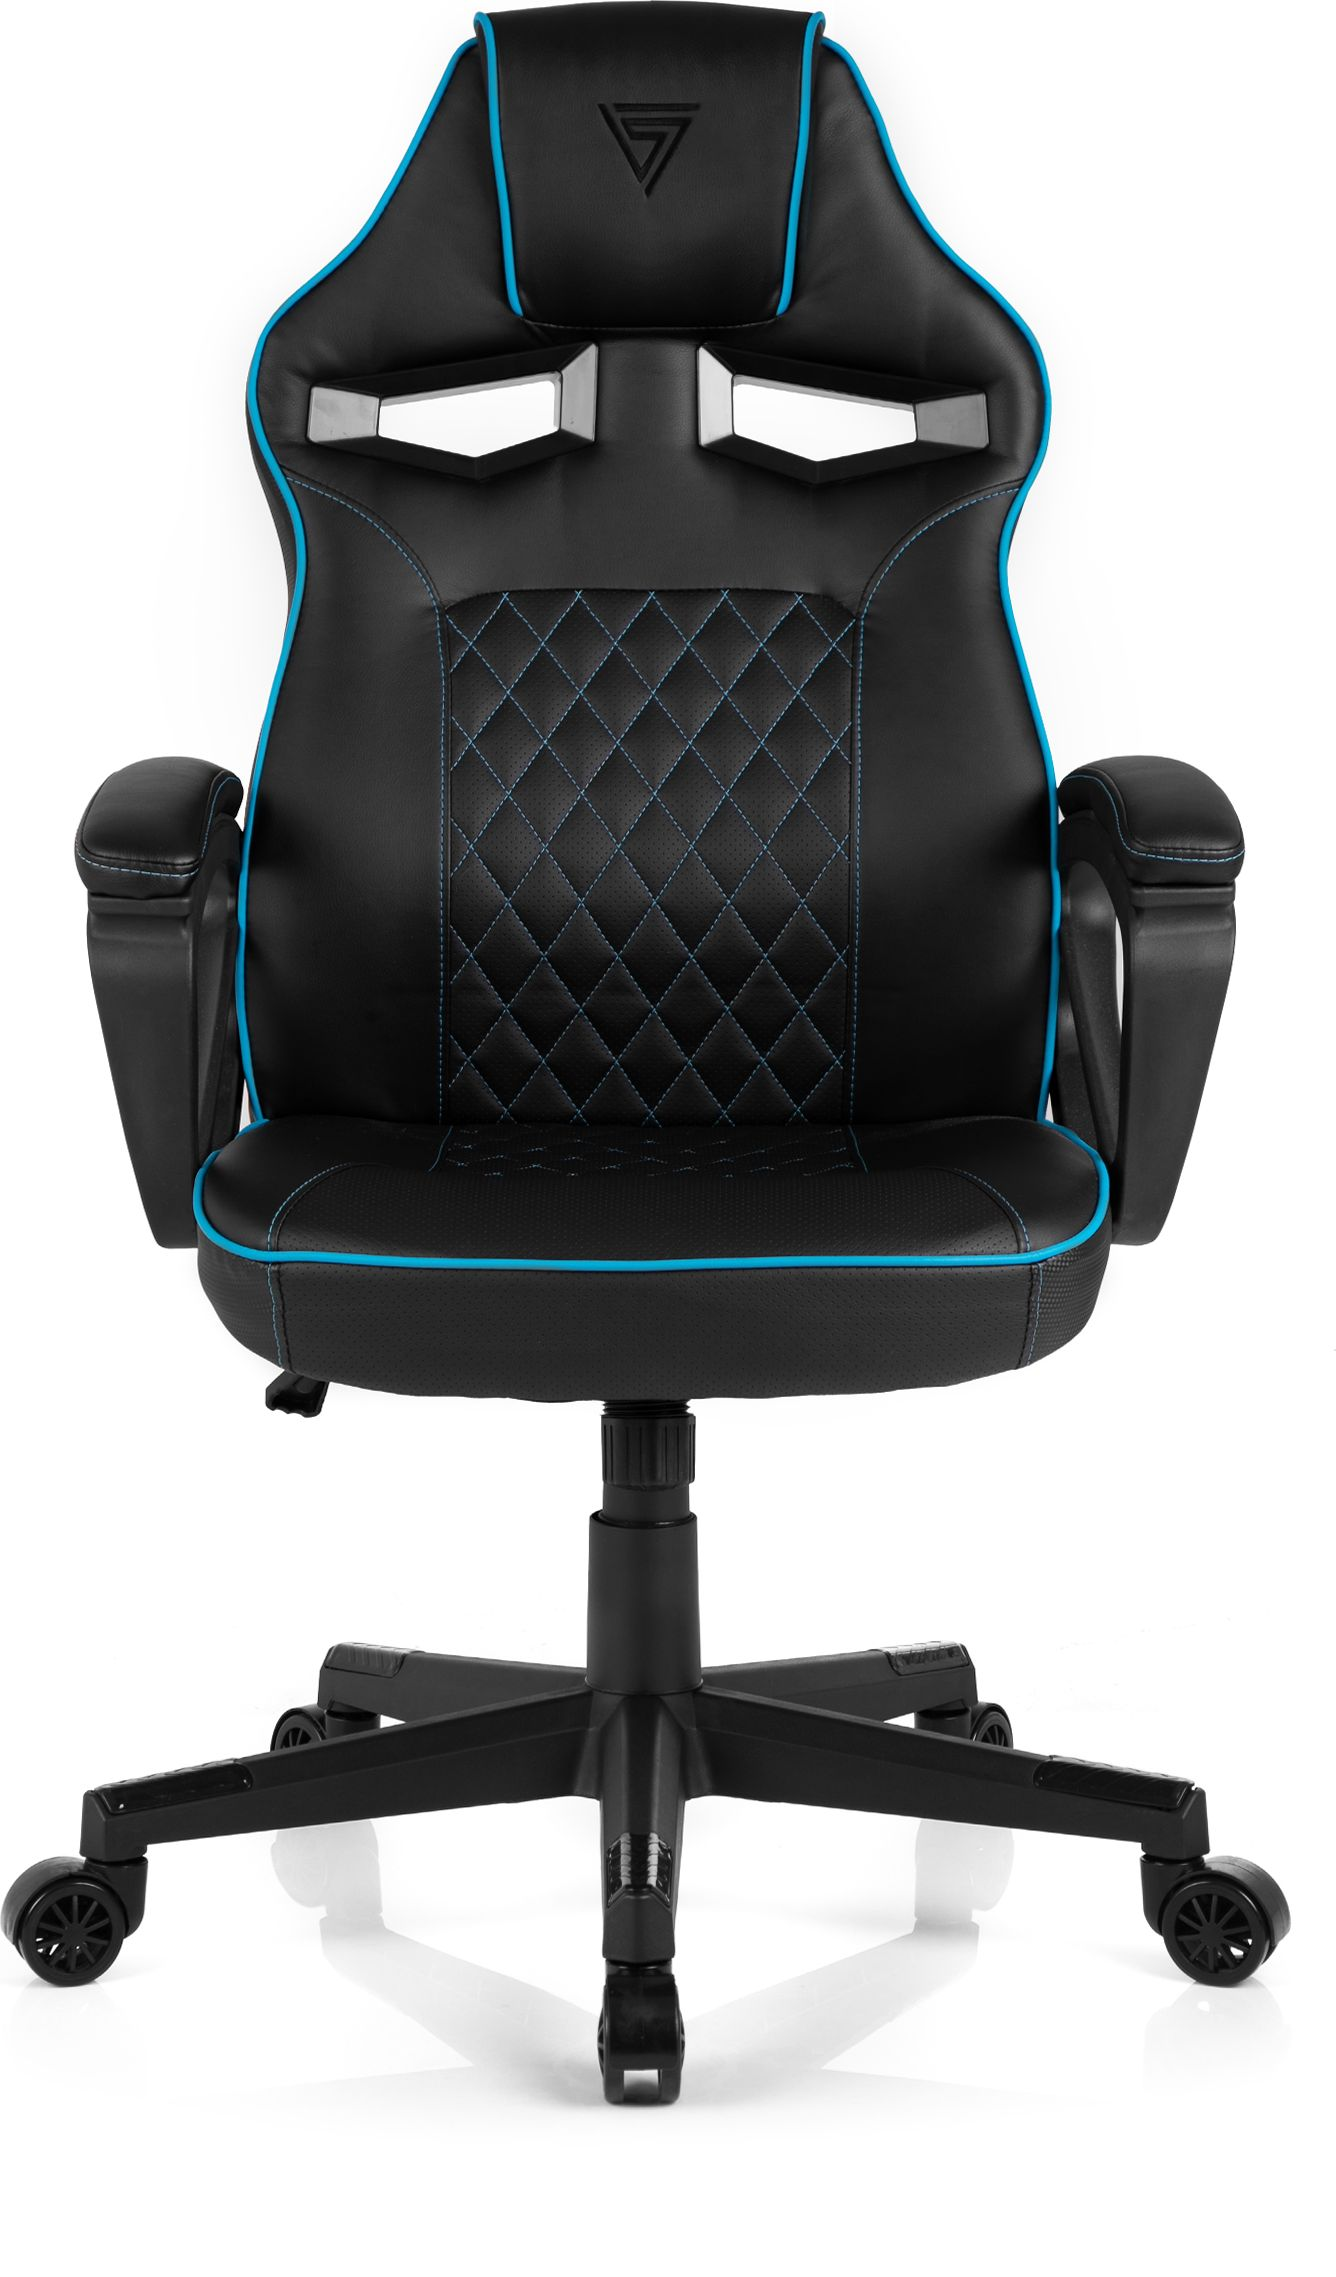 SENSE7 Gaming Stühle SENSE7 Knight set, + schwarz accessories blau Schwarz